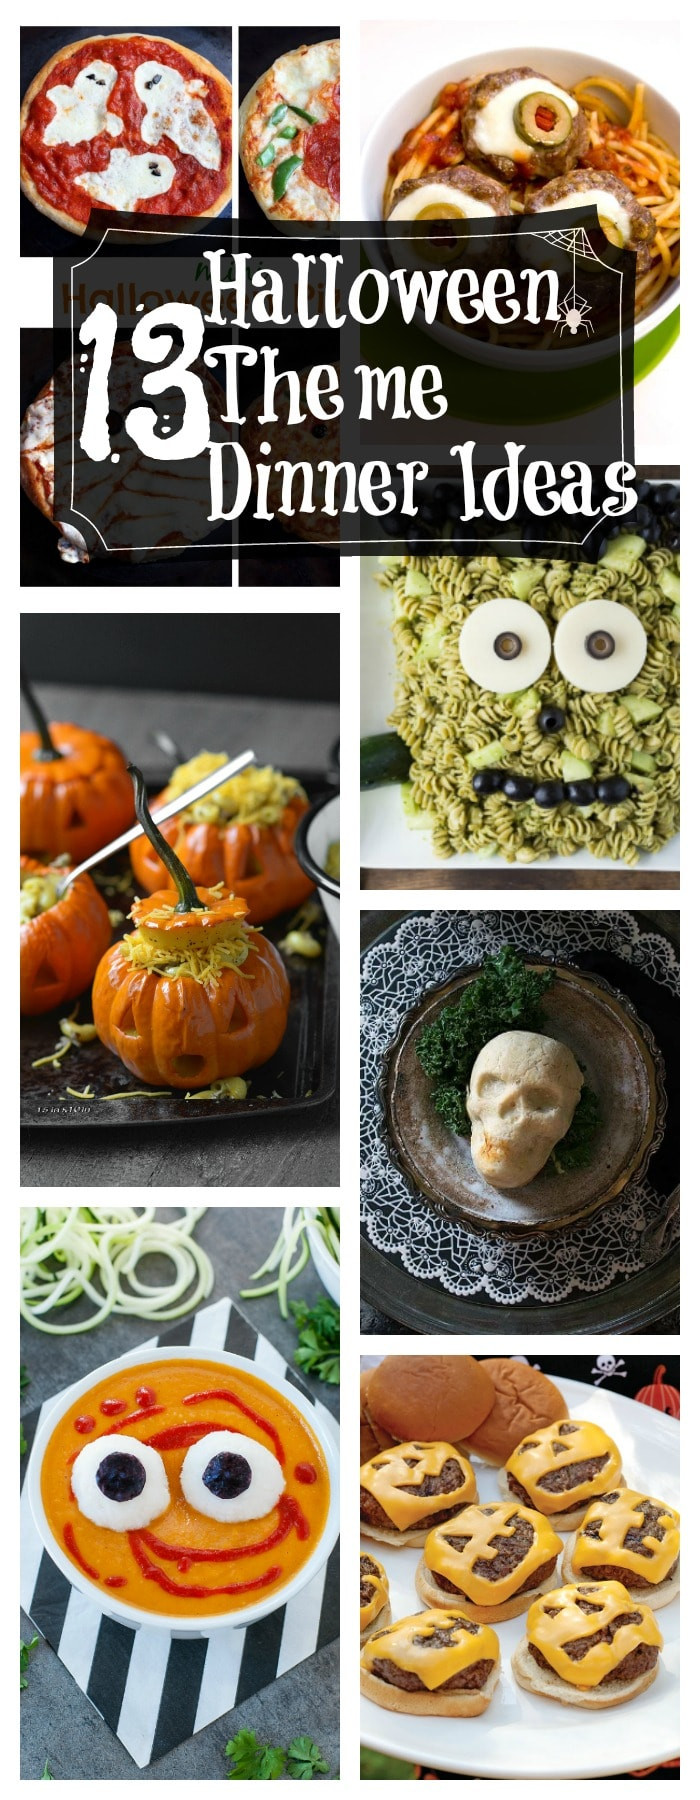 Halloween Dinner Ideas
 13 Healthy Halloween Themed Dinner Ideas